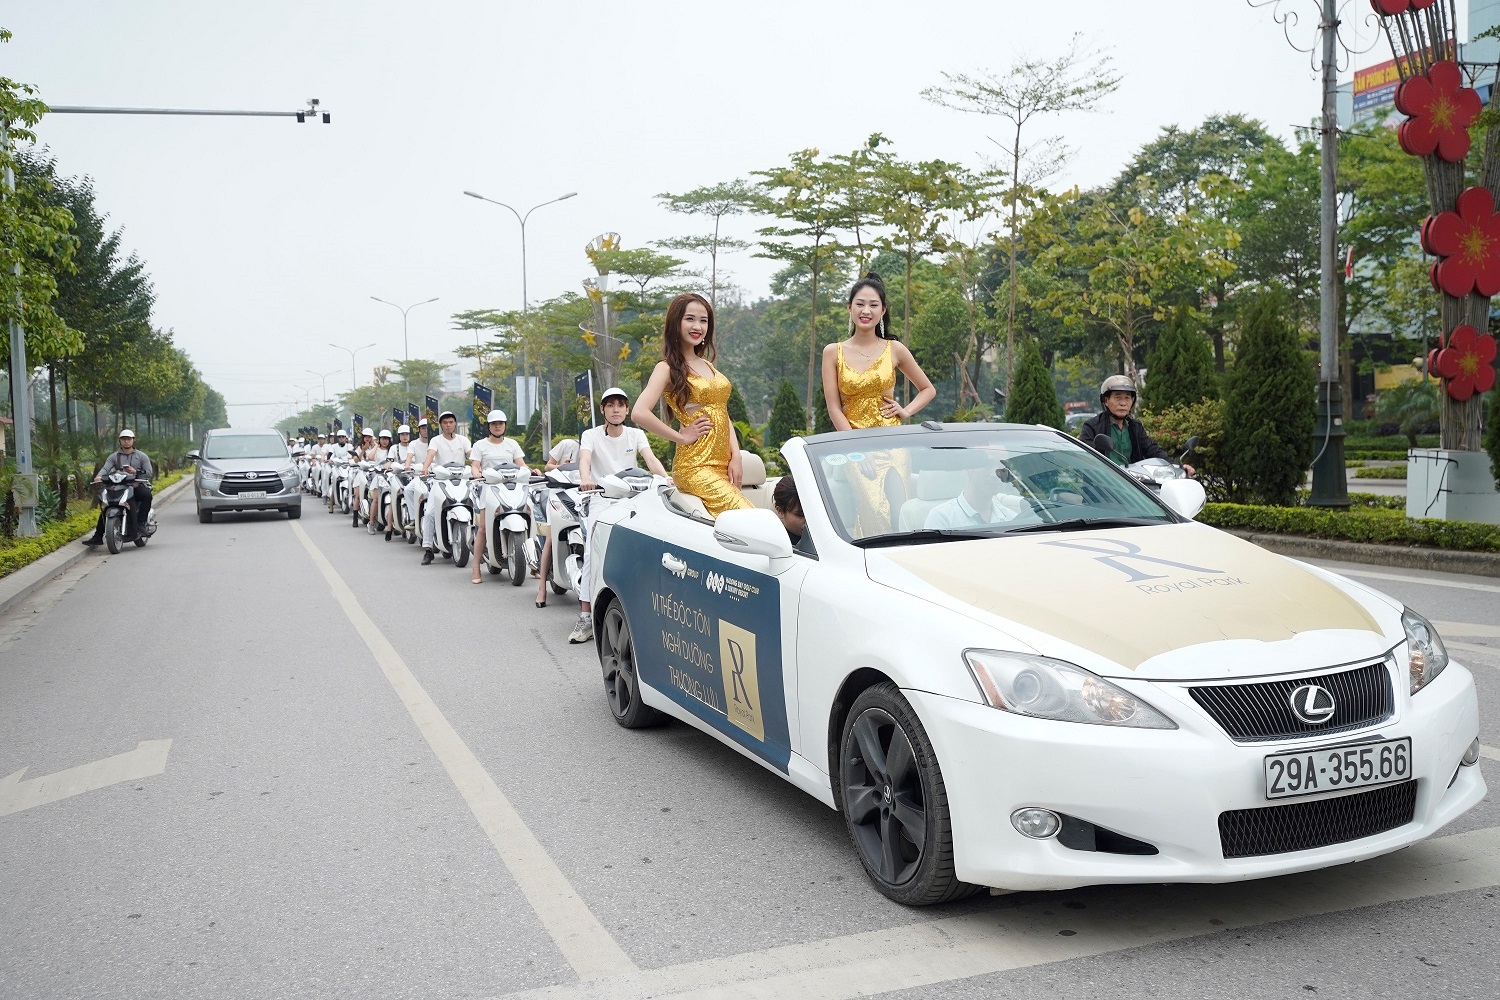 Đoàn Roadshow FLC Ha Long tiếp tục “phủ sóng” TP. Bắc Ninh, mang hình ảnh FLC Hạ Long đến với “miền đất quan họ” đầy tiềm năng.